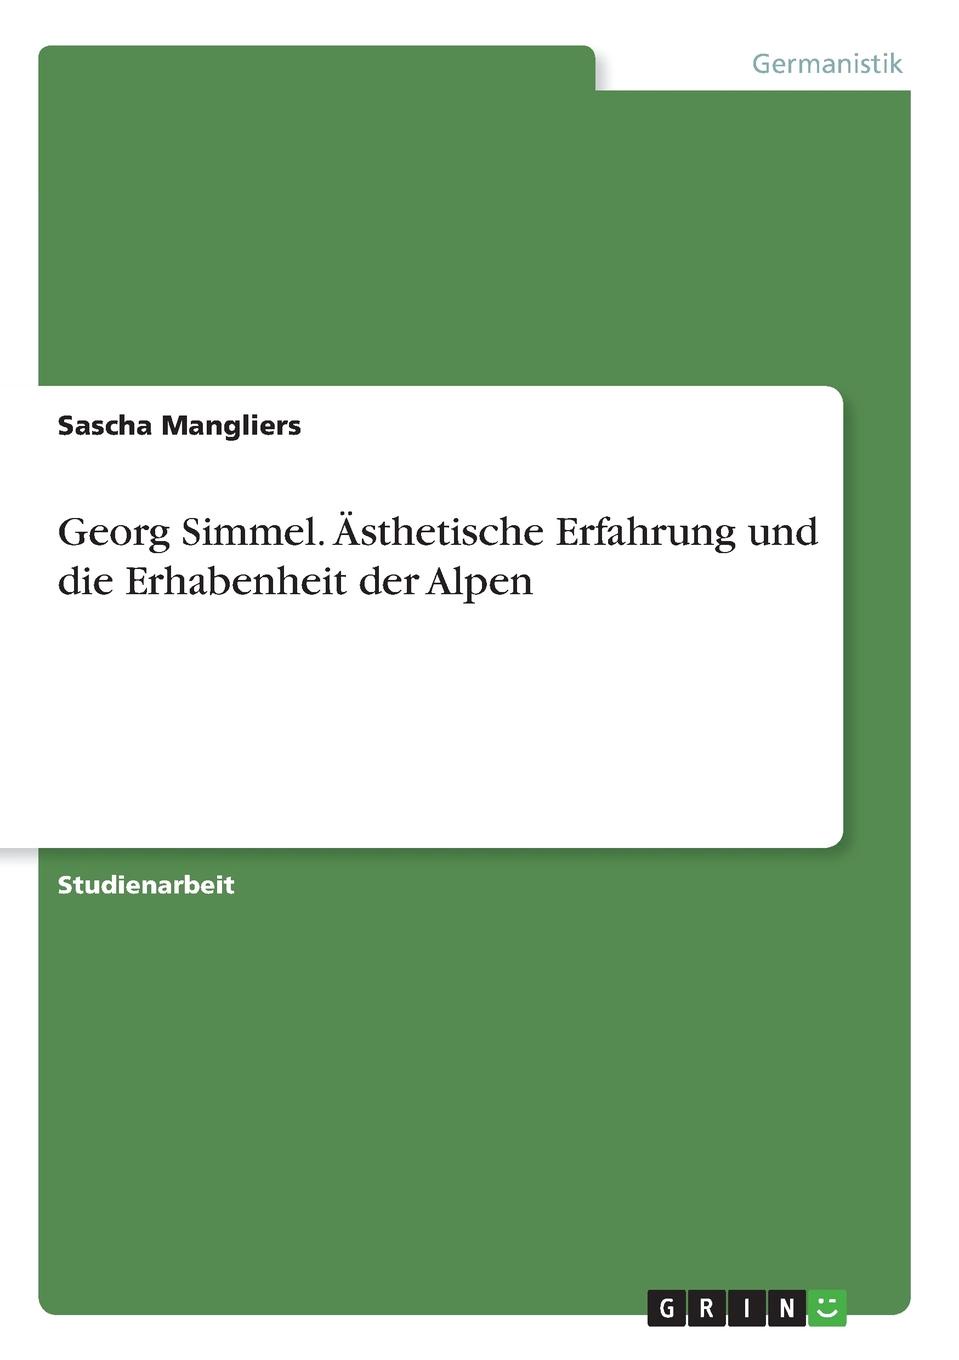 Georg Simmel. Asthetische Erfahrung und die Erhabenheit der Alpen